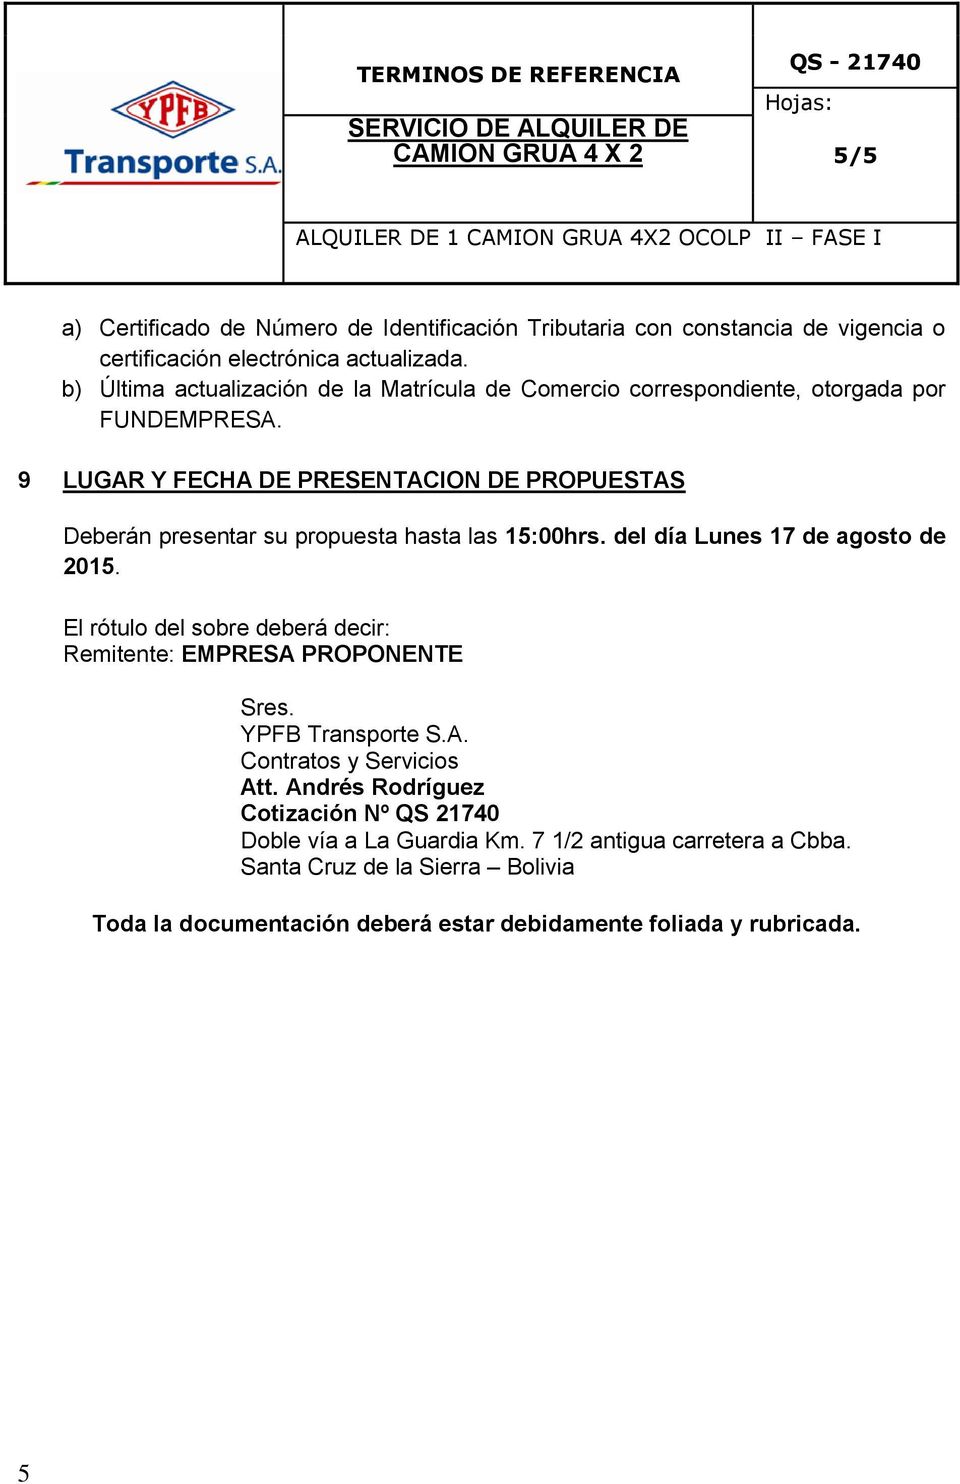 9 LUGAR Y FECHA DE PRESENTACION DE PROPUESTAS Deberán presentar su propuesta hasta las 15:00hrs. del día Lunes 17 de agosto de 2015.